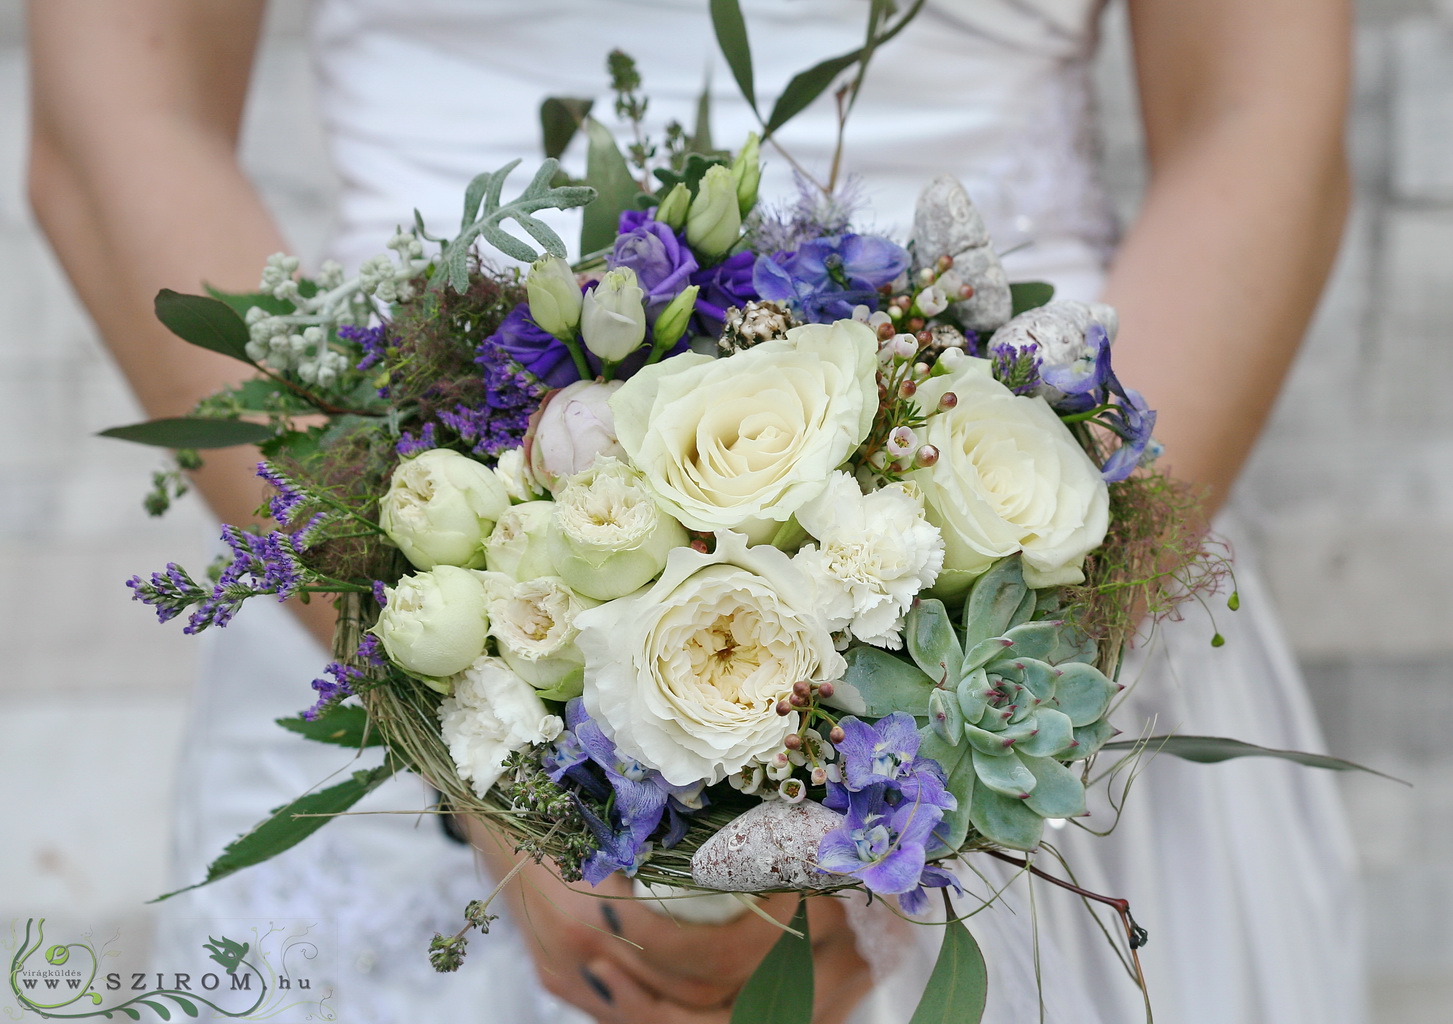 Menyasszonyi csokor lila-fehér fészek ( angol rózsa, rózsa, szegfű, limonium, kövirózsa , vax, liziantusz, consolida)